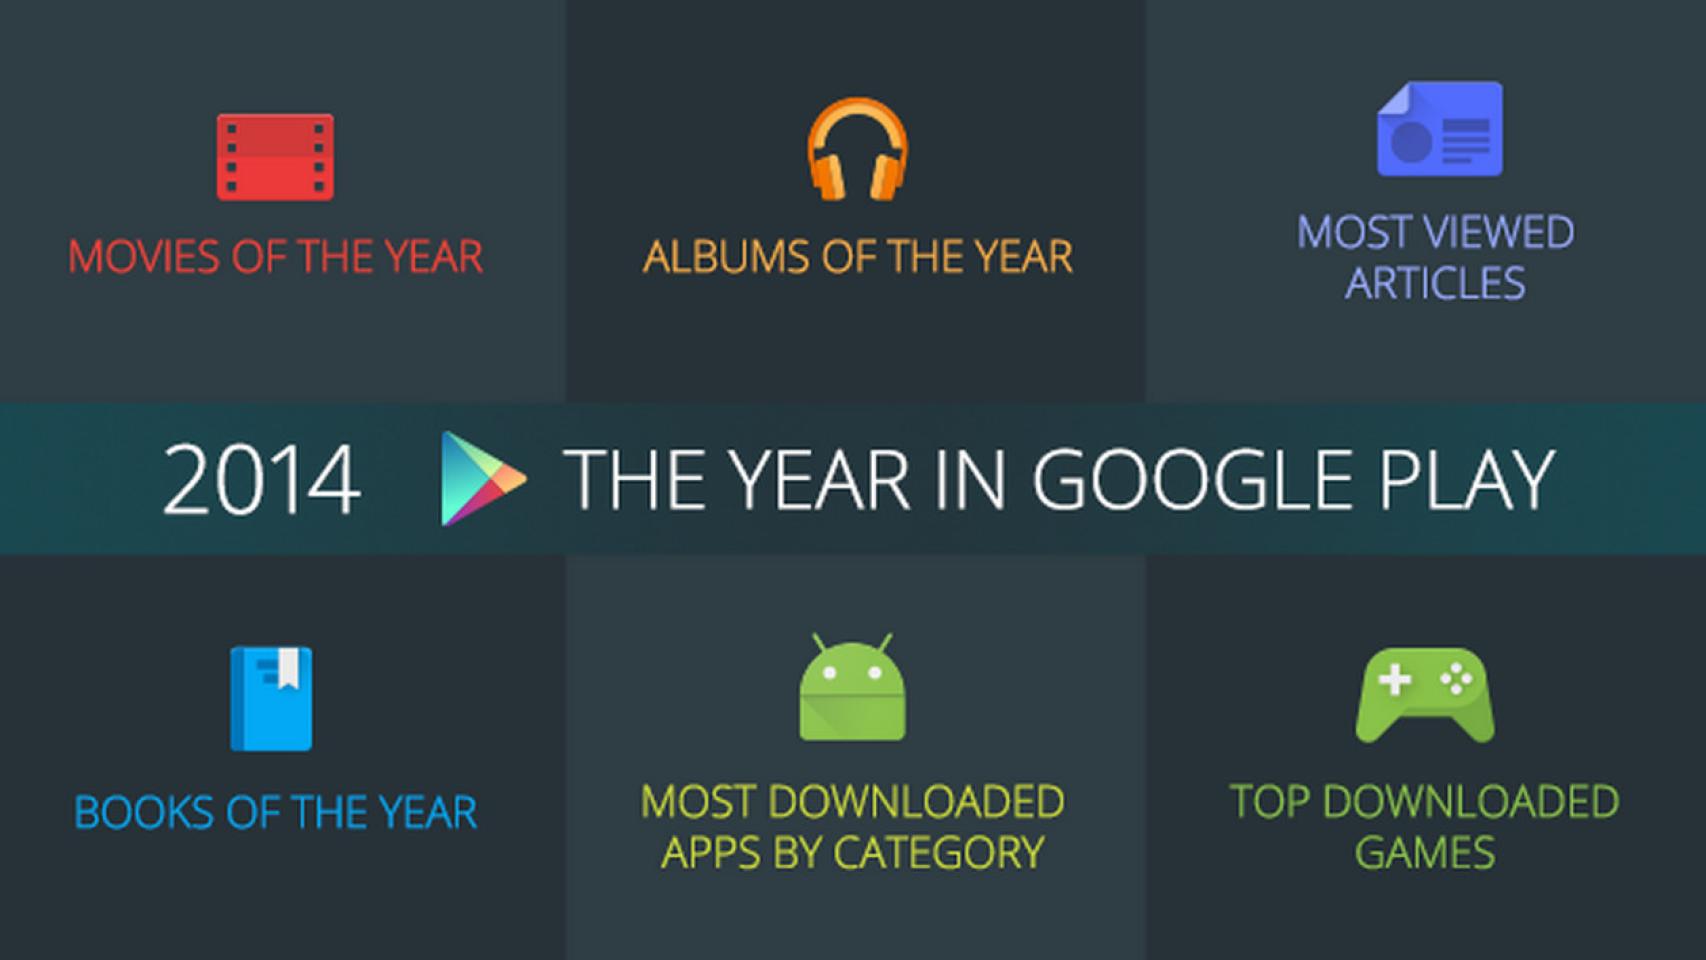 Google publica una infografía con lo más descargado de Google Play en 2014